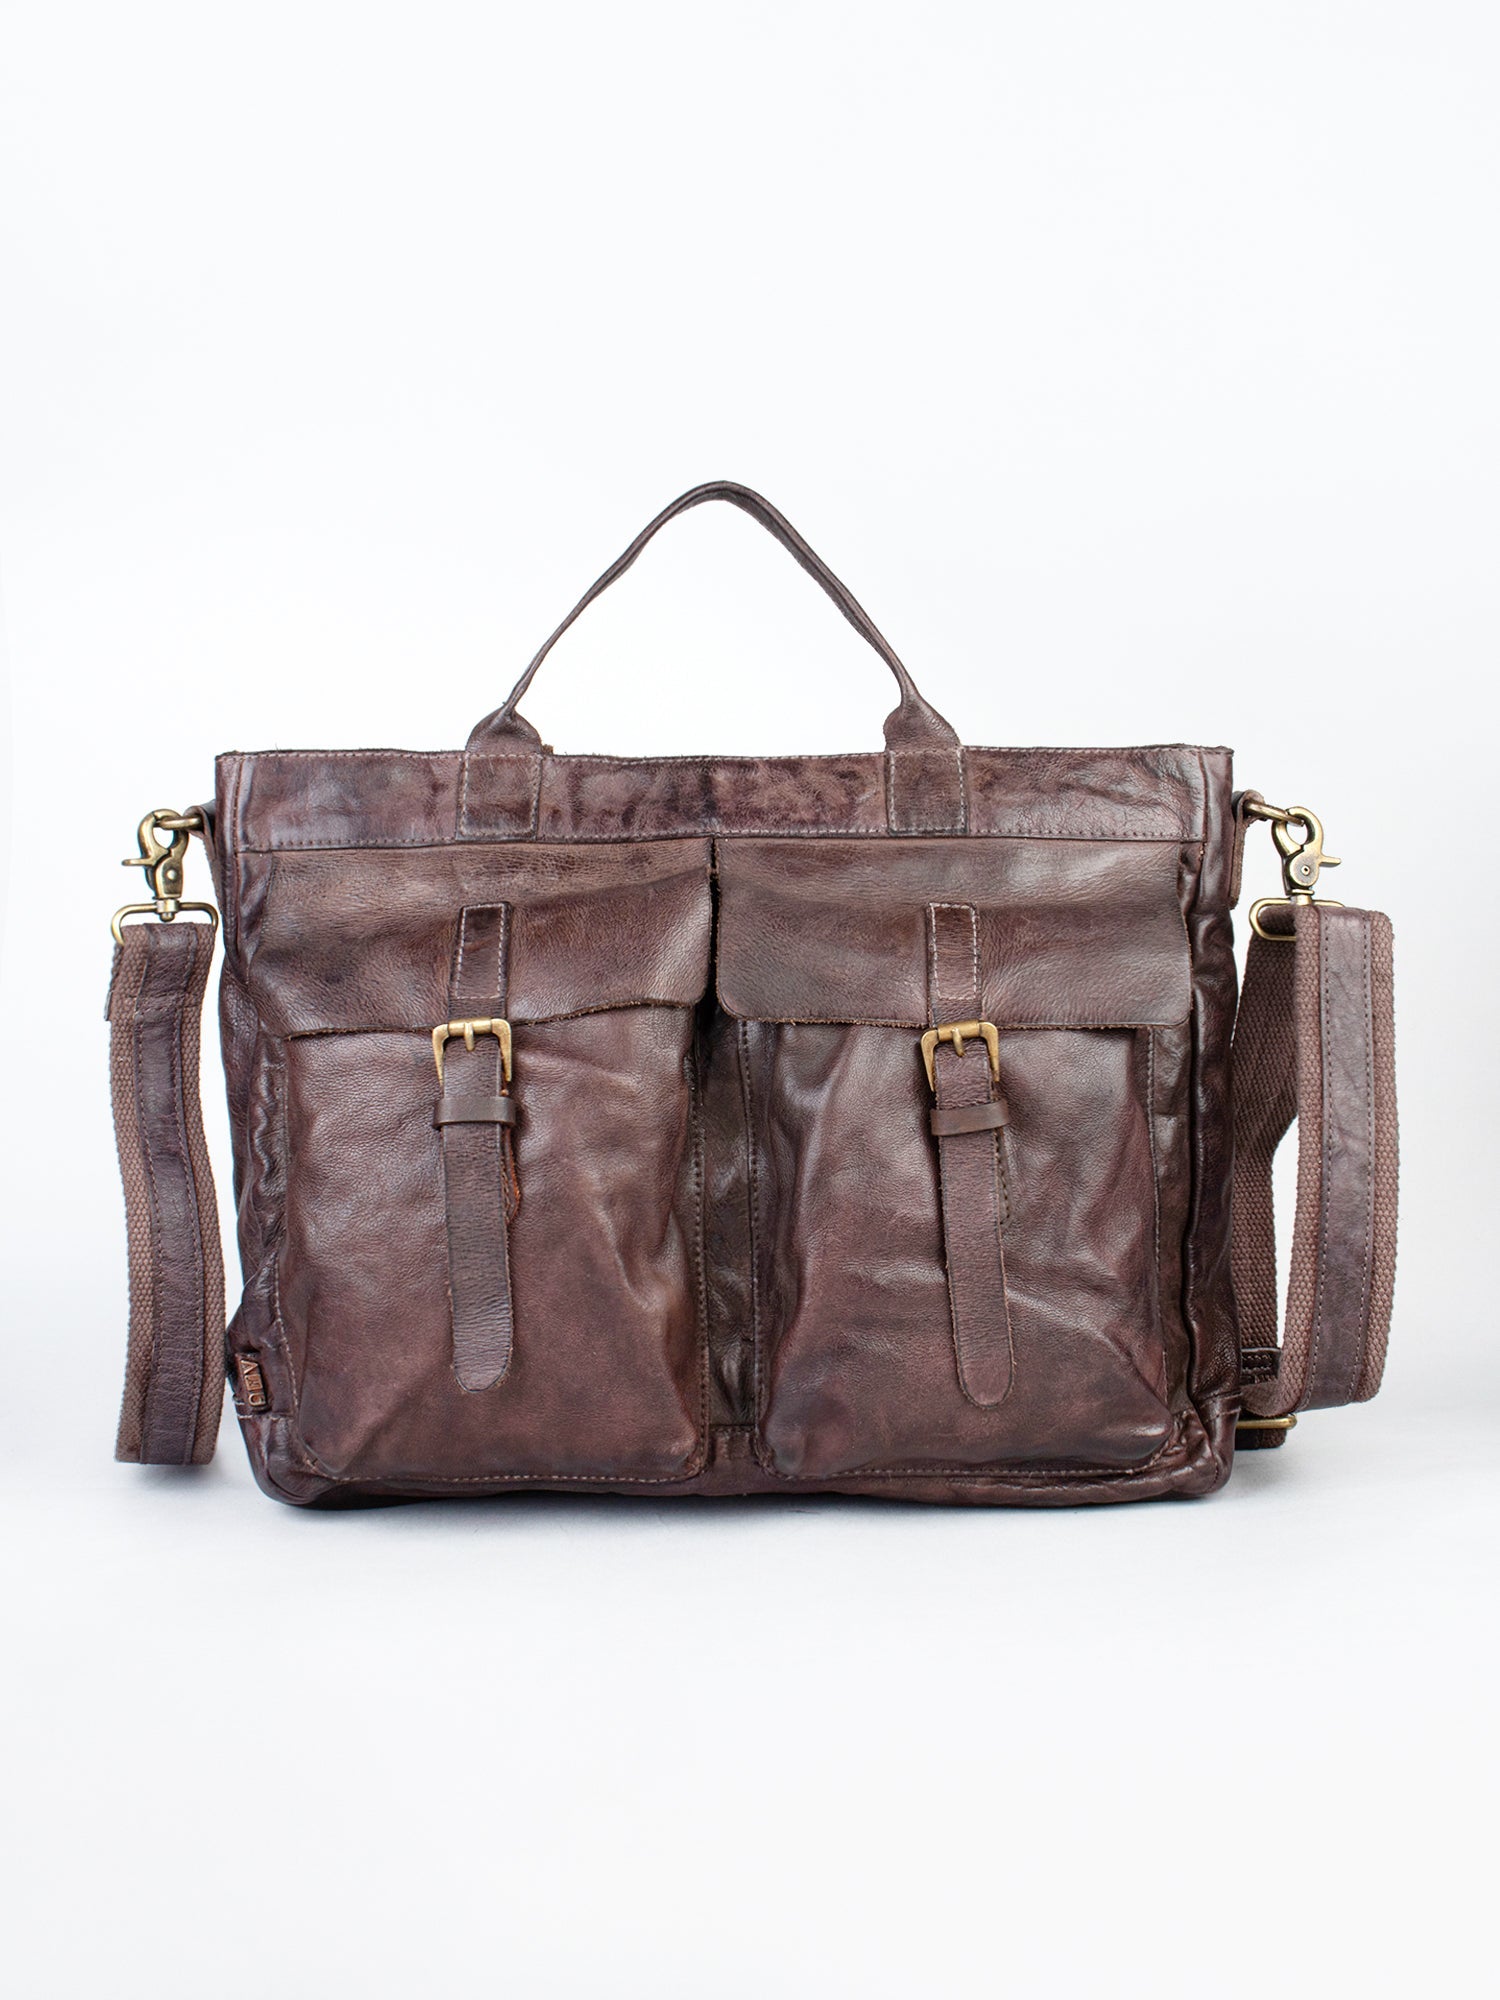 Vintage Brown Leather Laptop Bag With Front Pocket For Men & Women